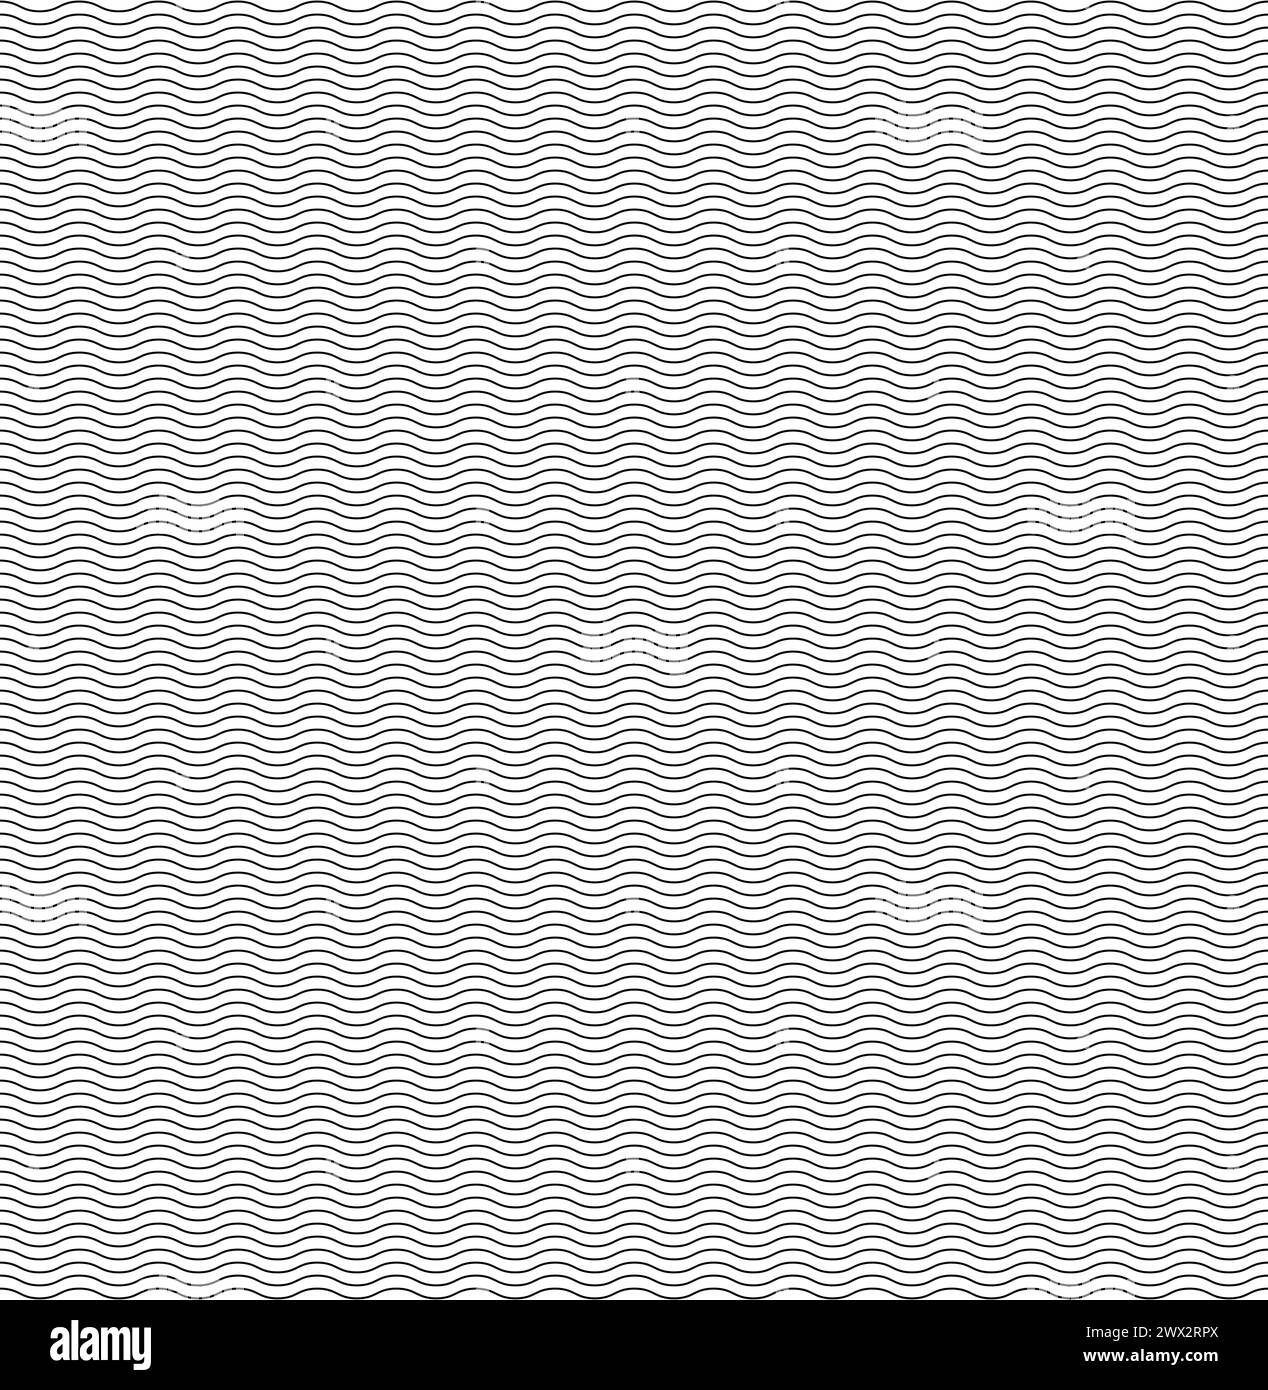 linee ondulate, linee ondulate orizzontali in bianco e nero linee ondulate lisce - trama vettoriale ripetibile senza cuciture Illustrazione Vettoriale